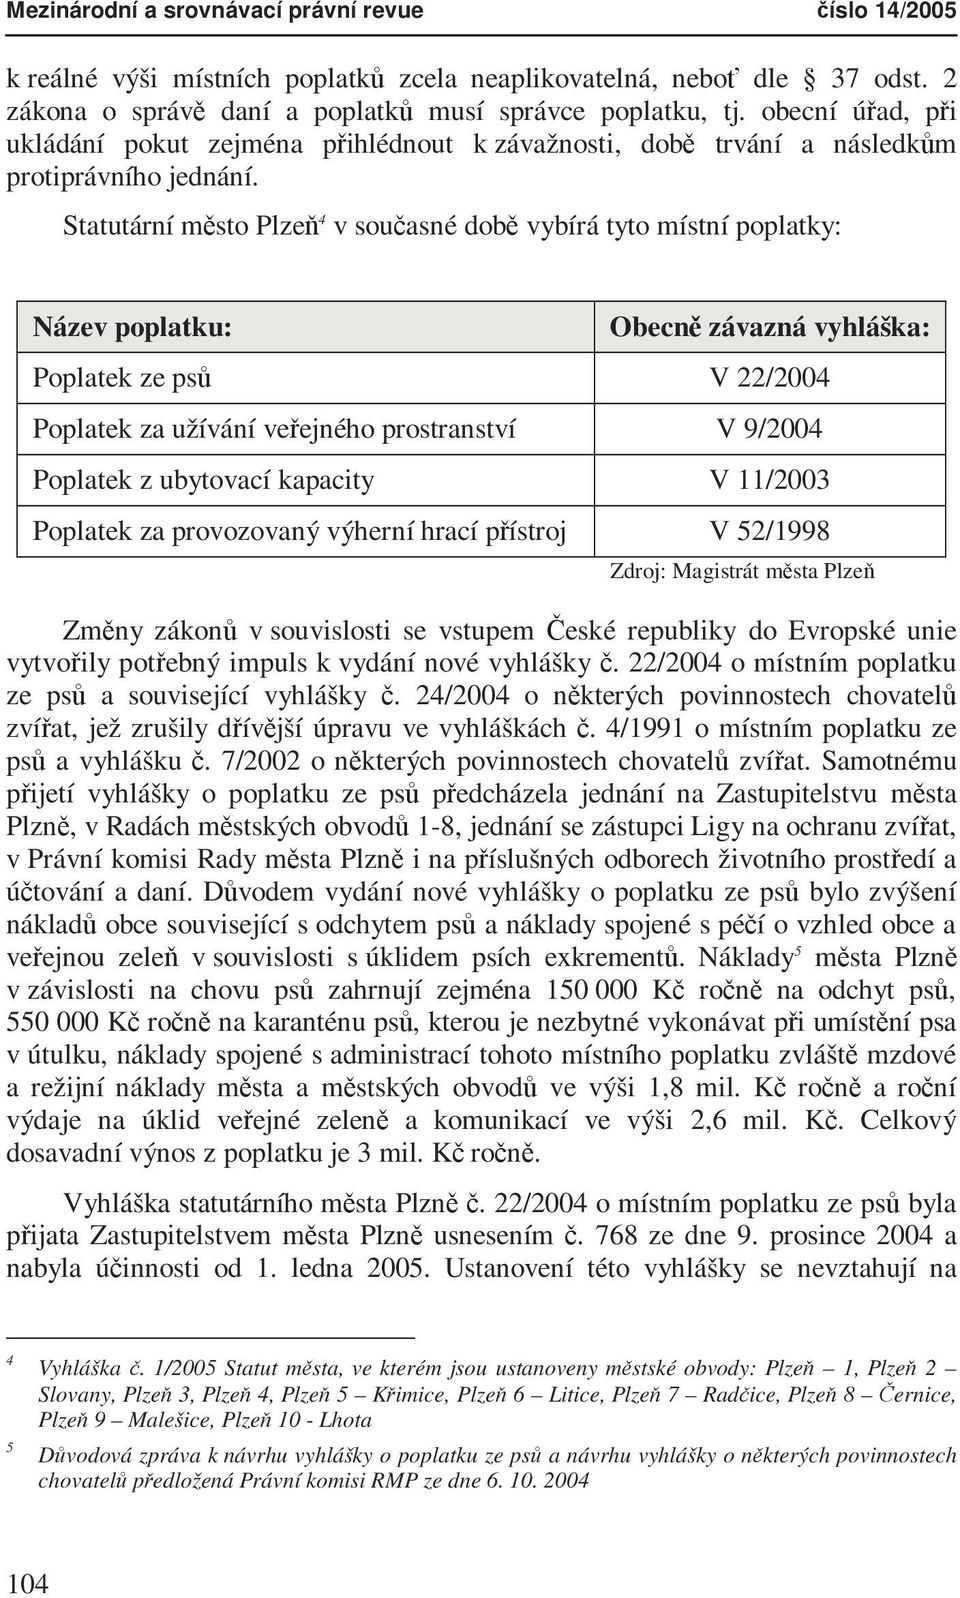 Statutární město Plzeň 4 v současné době vybírá tyto místní poplatky: Název poplatku: Obecně závazná vyhláška: Poplatek ze psů V 22/2004 Poplatek za užívání veřejného prostranství V 9/2004 Poplatek z